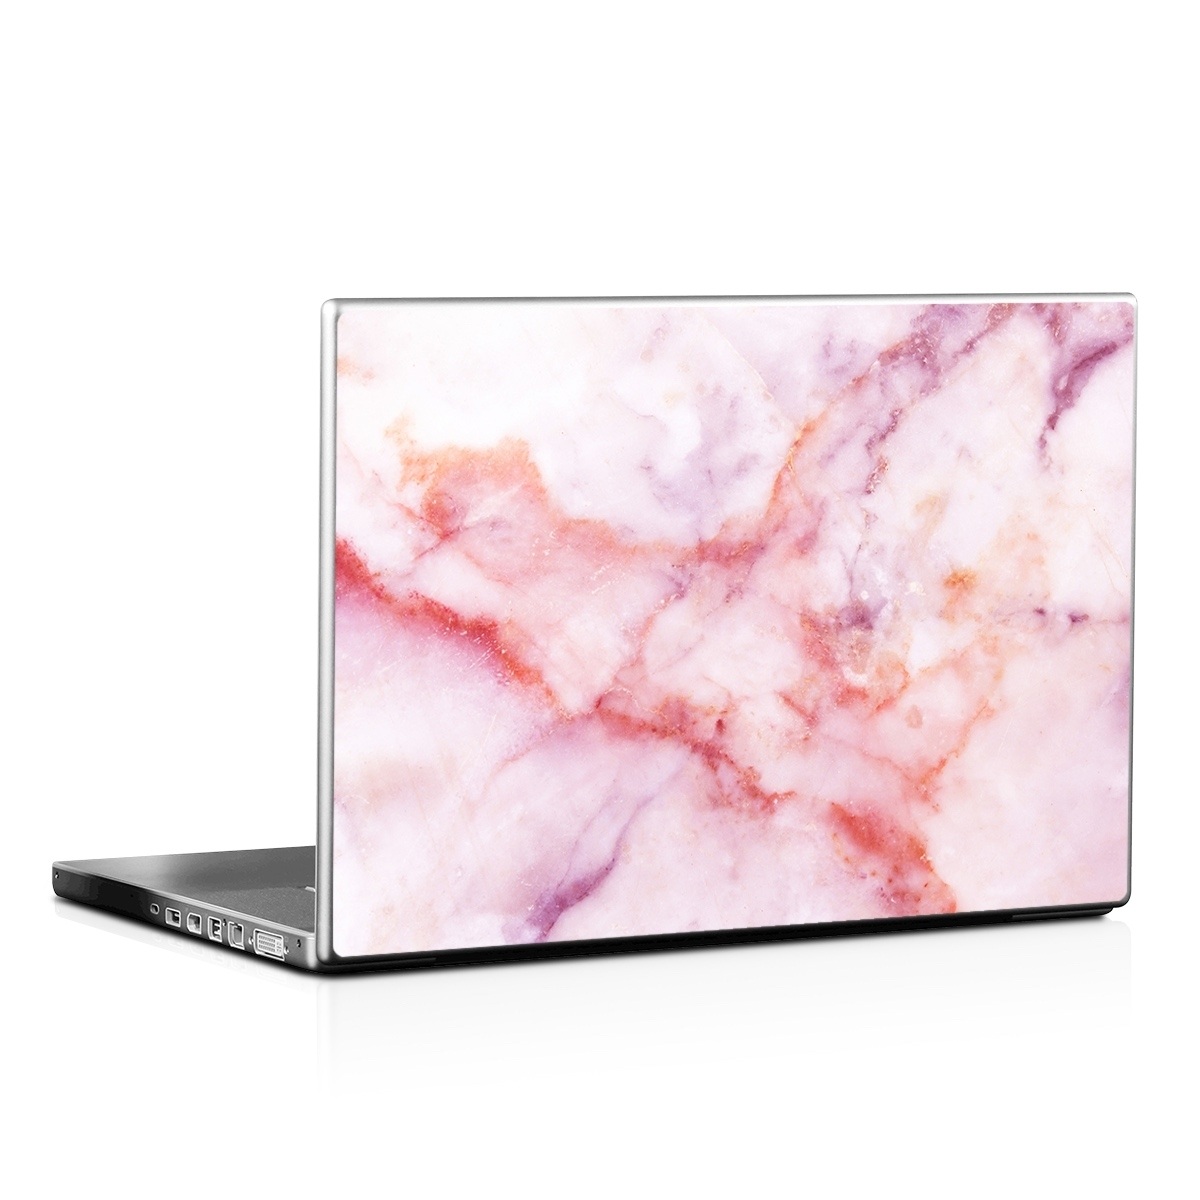 Laptop Skin - Blush Marble (Image 1)